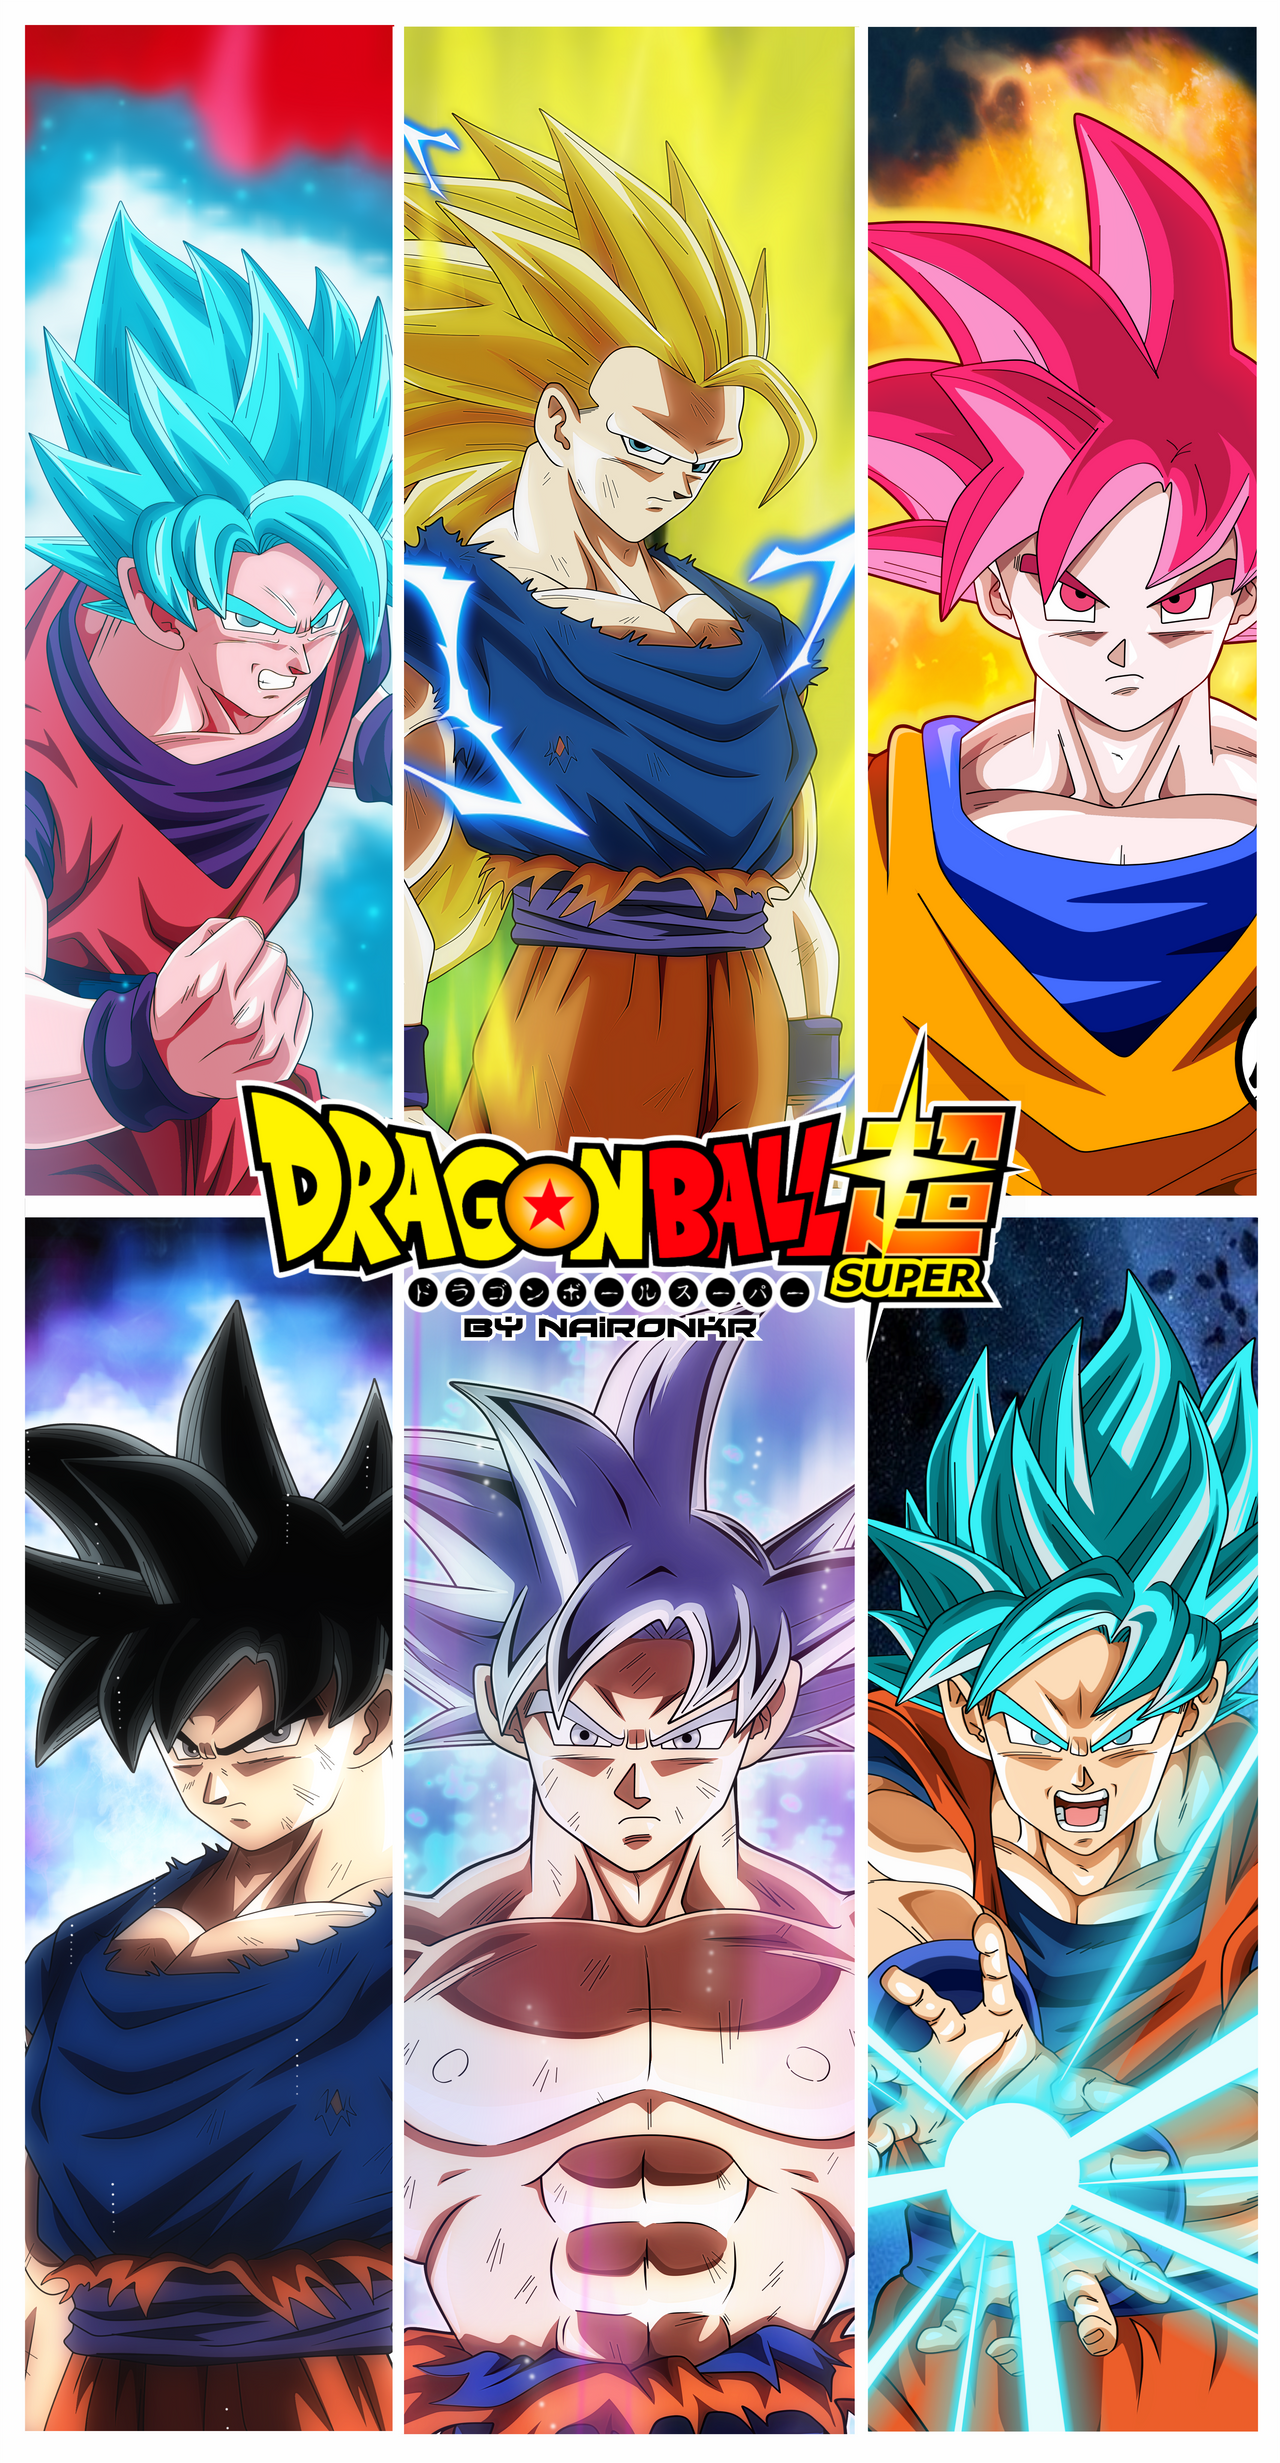 Goku SSJ God (Universo 7)  Dragon ball art goku, Anime dragon ball goku,  Dragon ball super manga